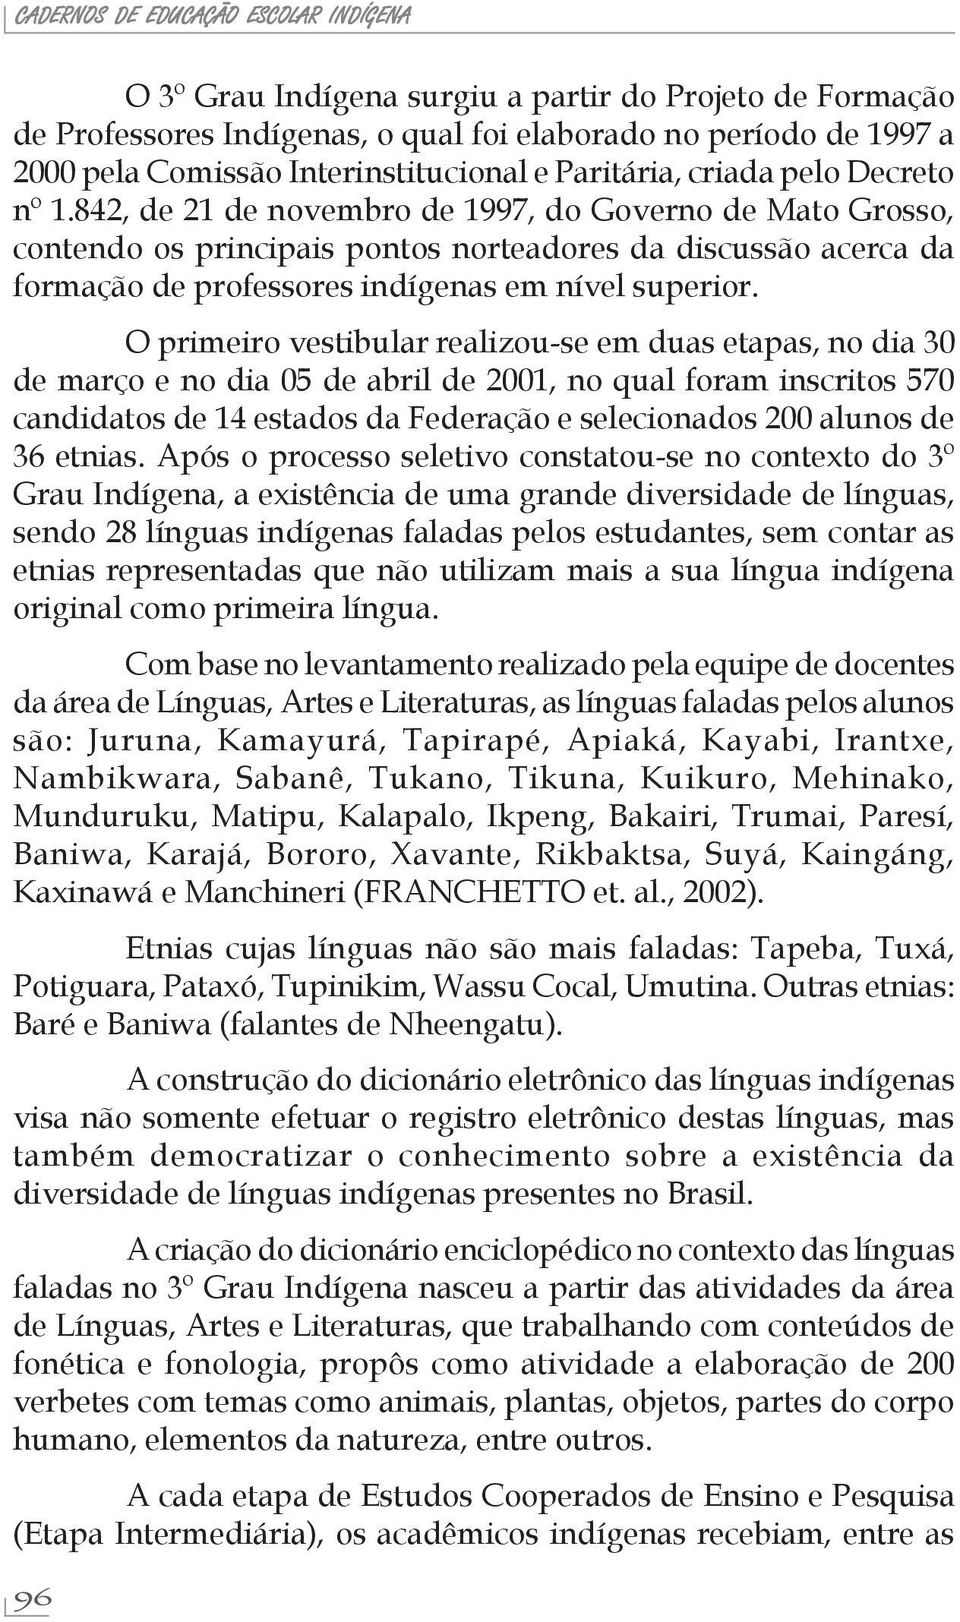 842, de 21 de novembro de 1997, do Governo de Mato Grosso, contendo os principais pontos norteadores da discussão acerca da formação de professores indígenas em nível superior.